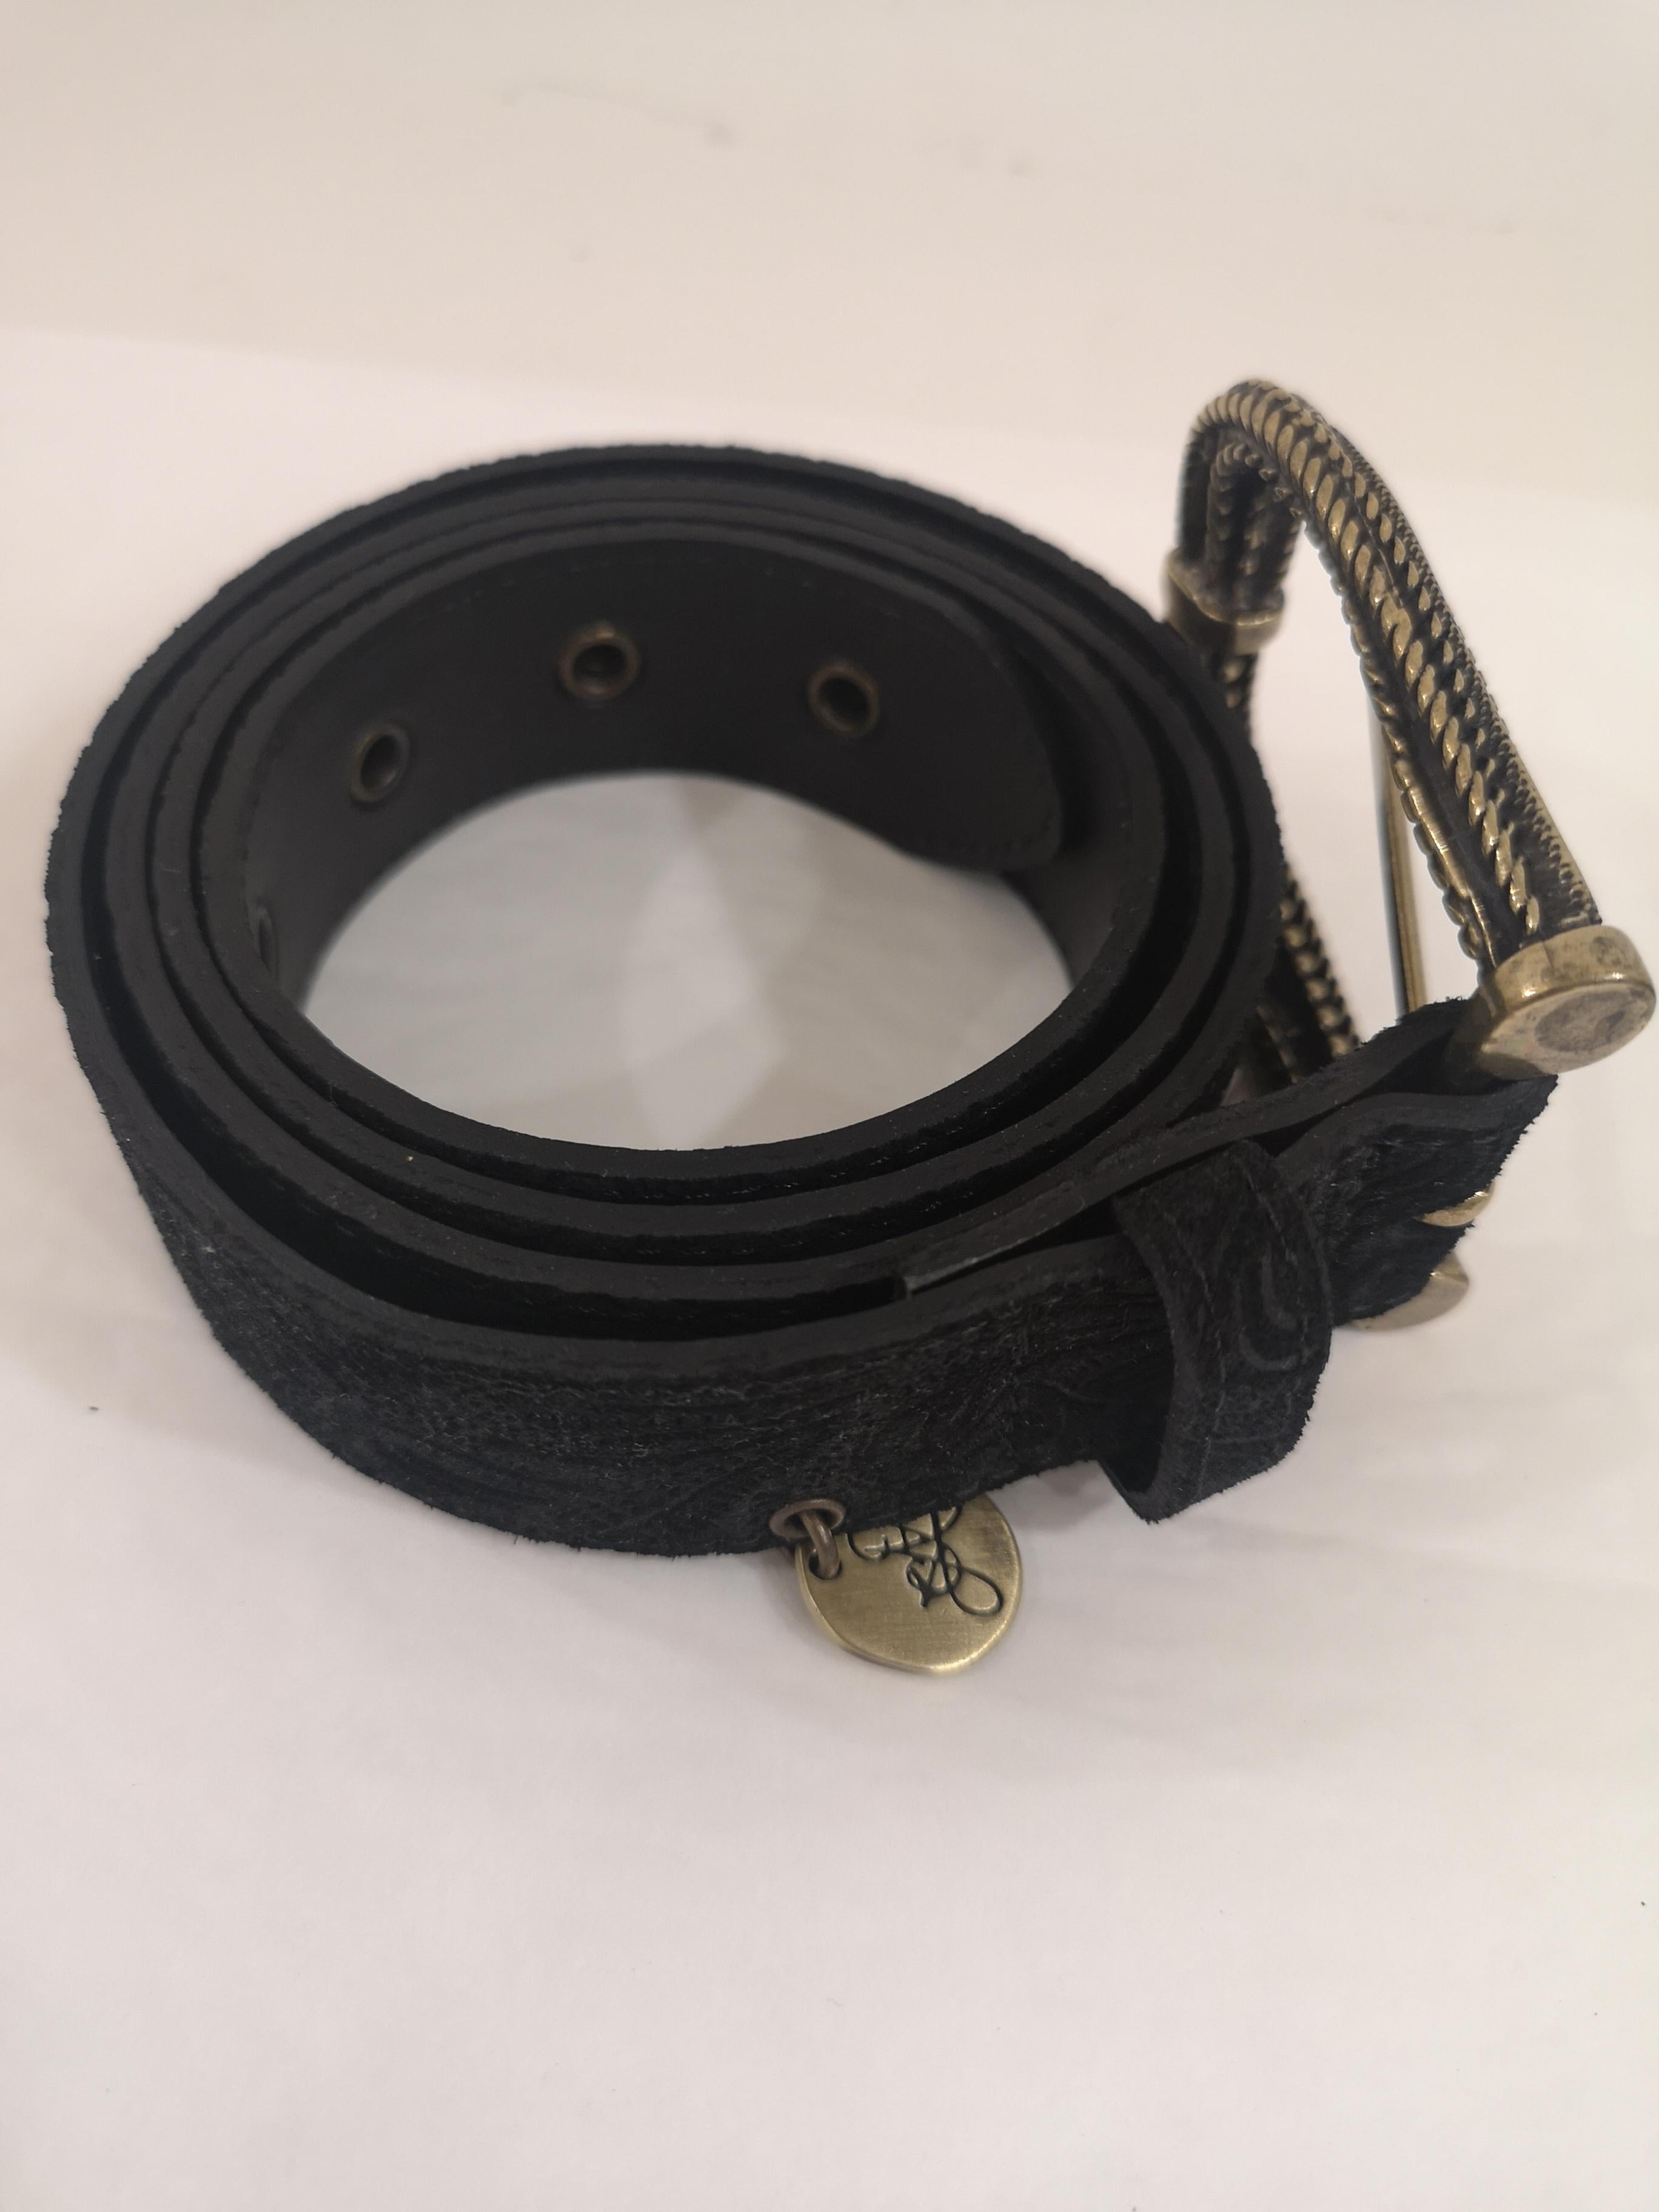 Black leather suede belt NWOT 1